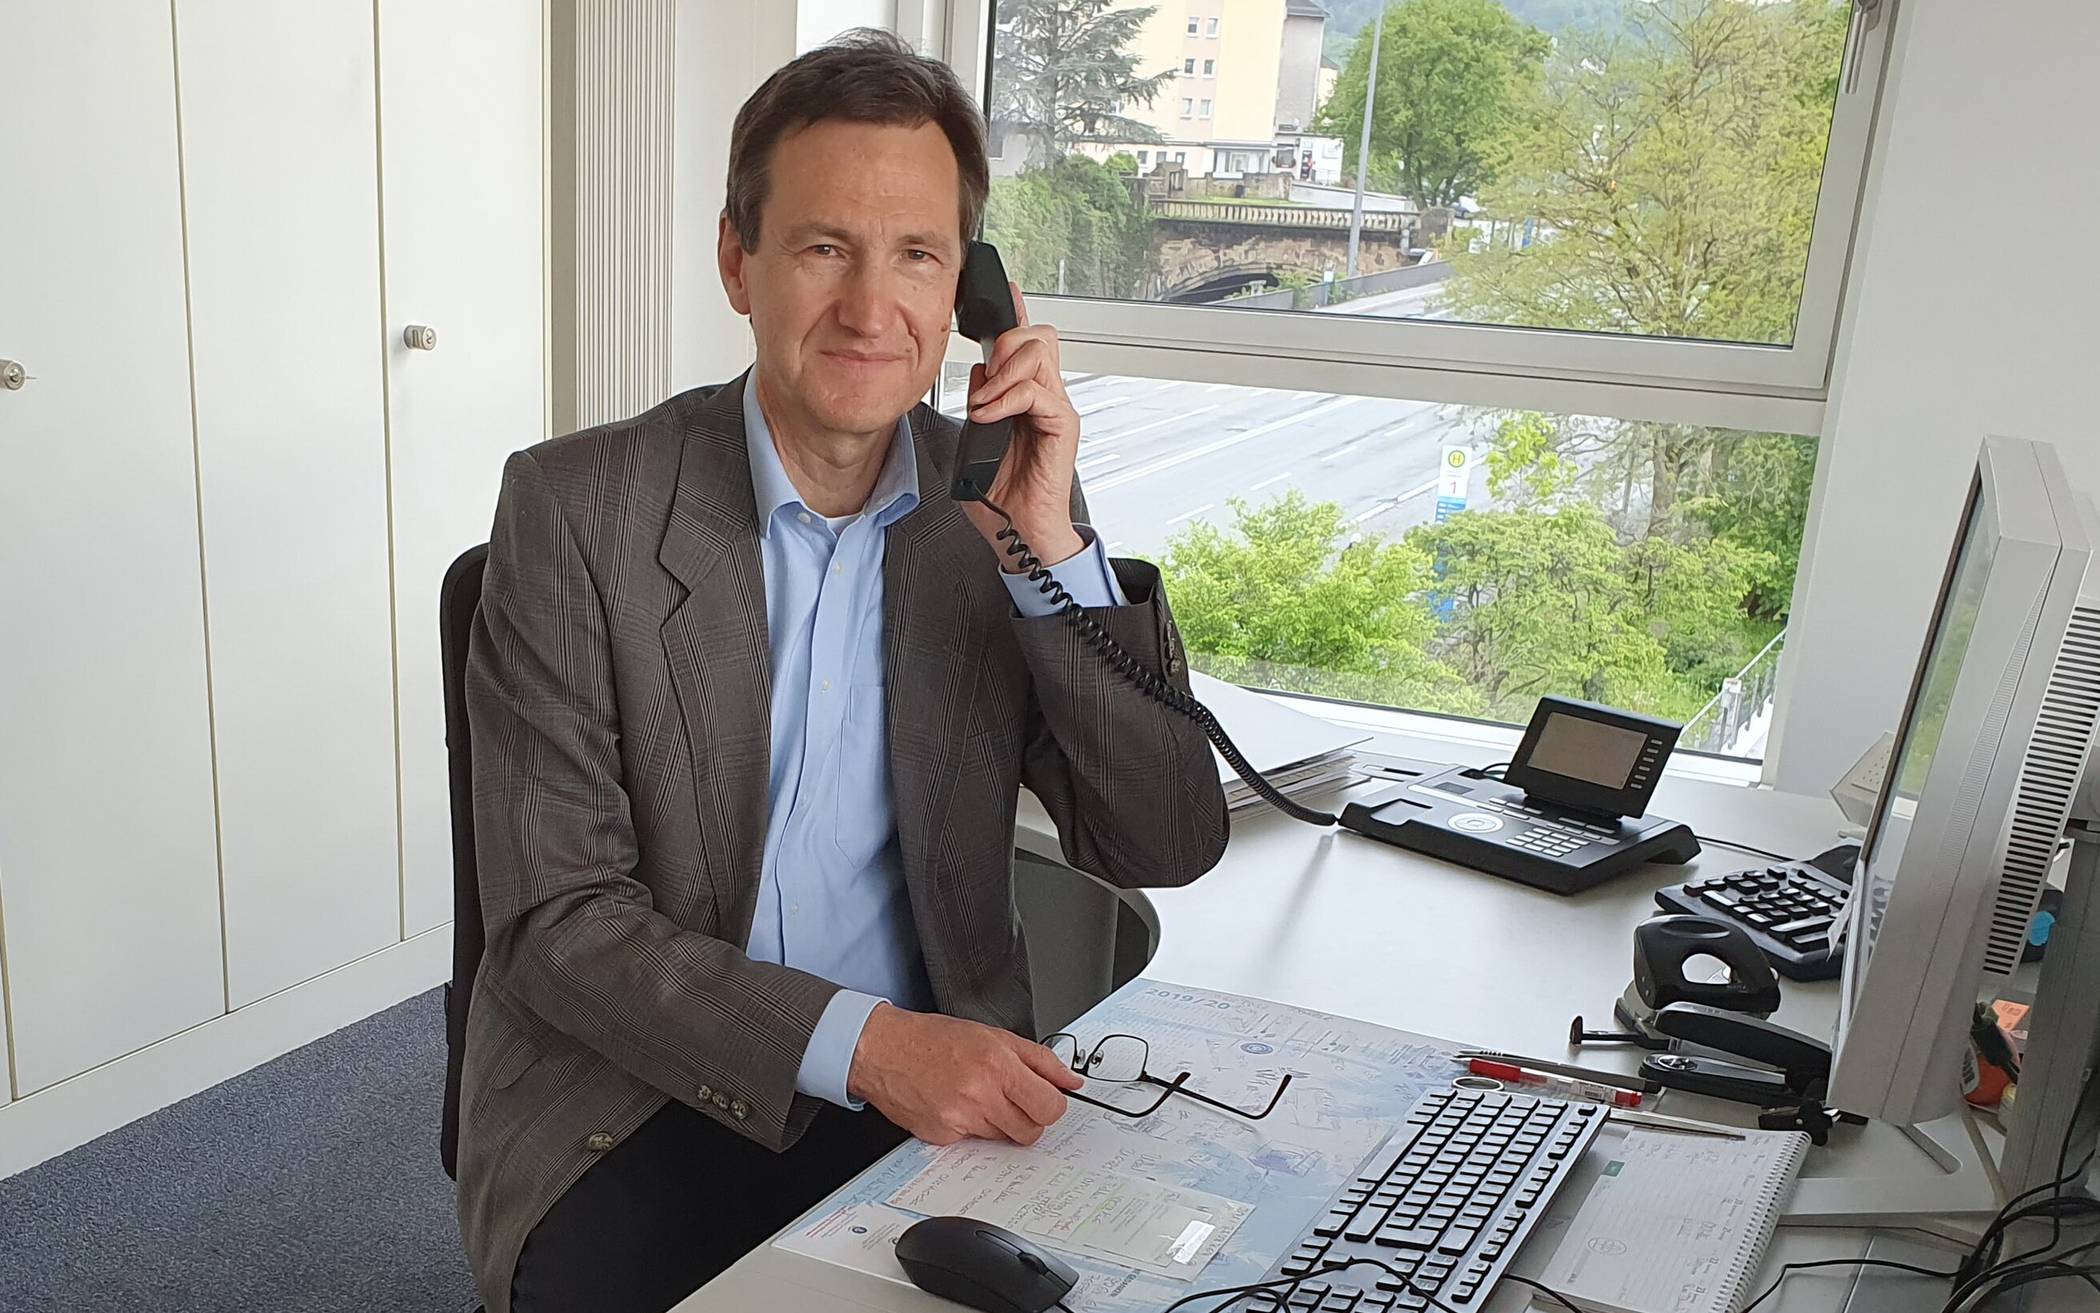  Prof. Dr. Bernd Sanner am Telefon in der Rundschau-Redaktion. Der Ärztliche Direktor und Chefarzt der Medizinischen Klinik am Bethesda ist einer der führenden deutschen Hypertonie-Spezialisten.  